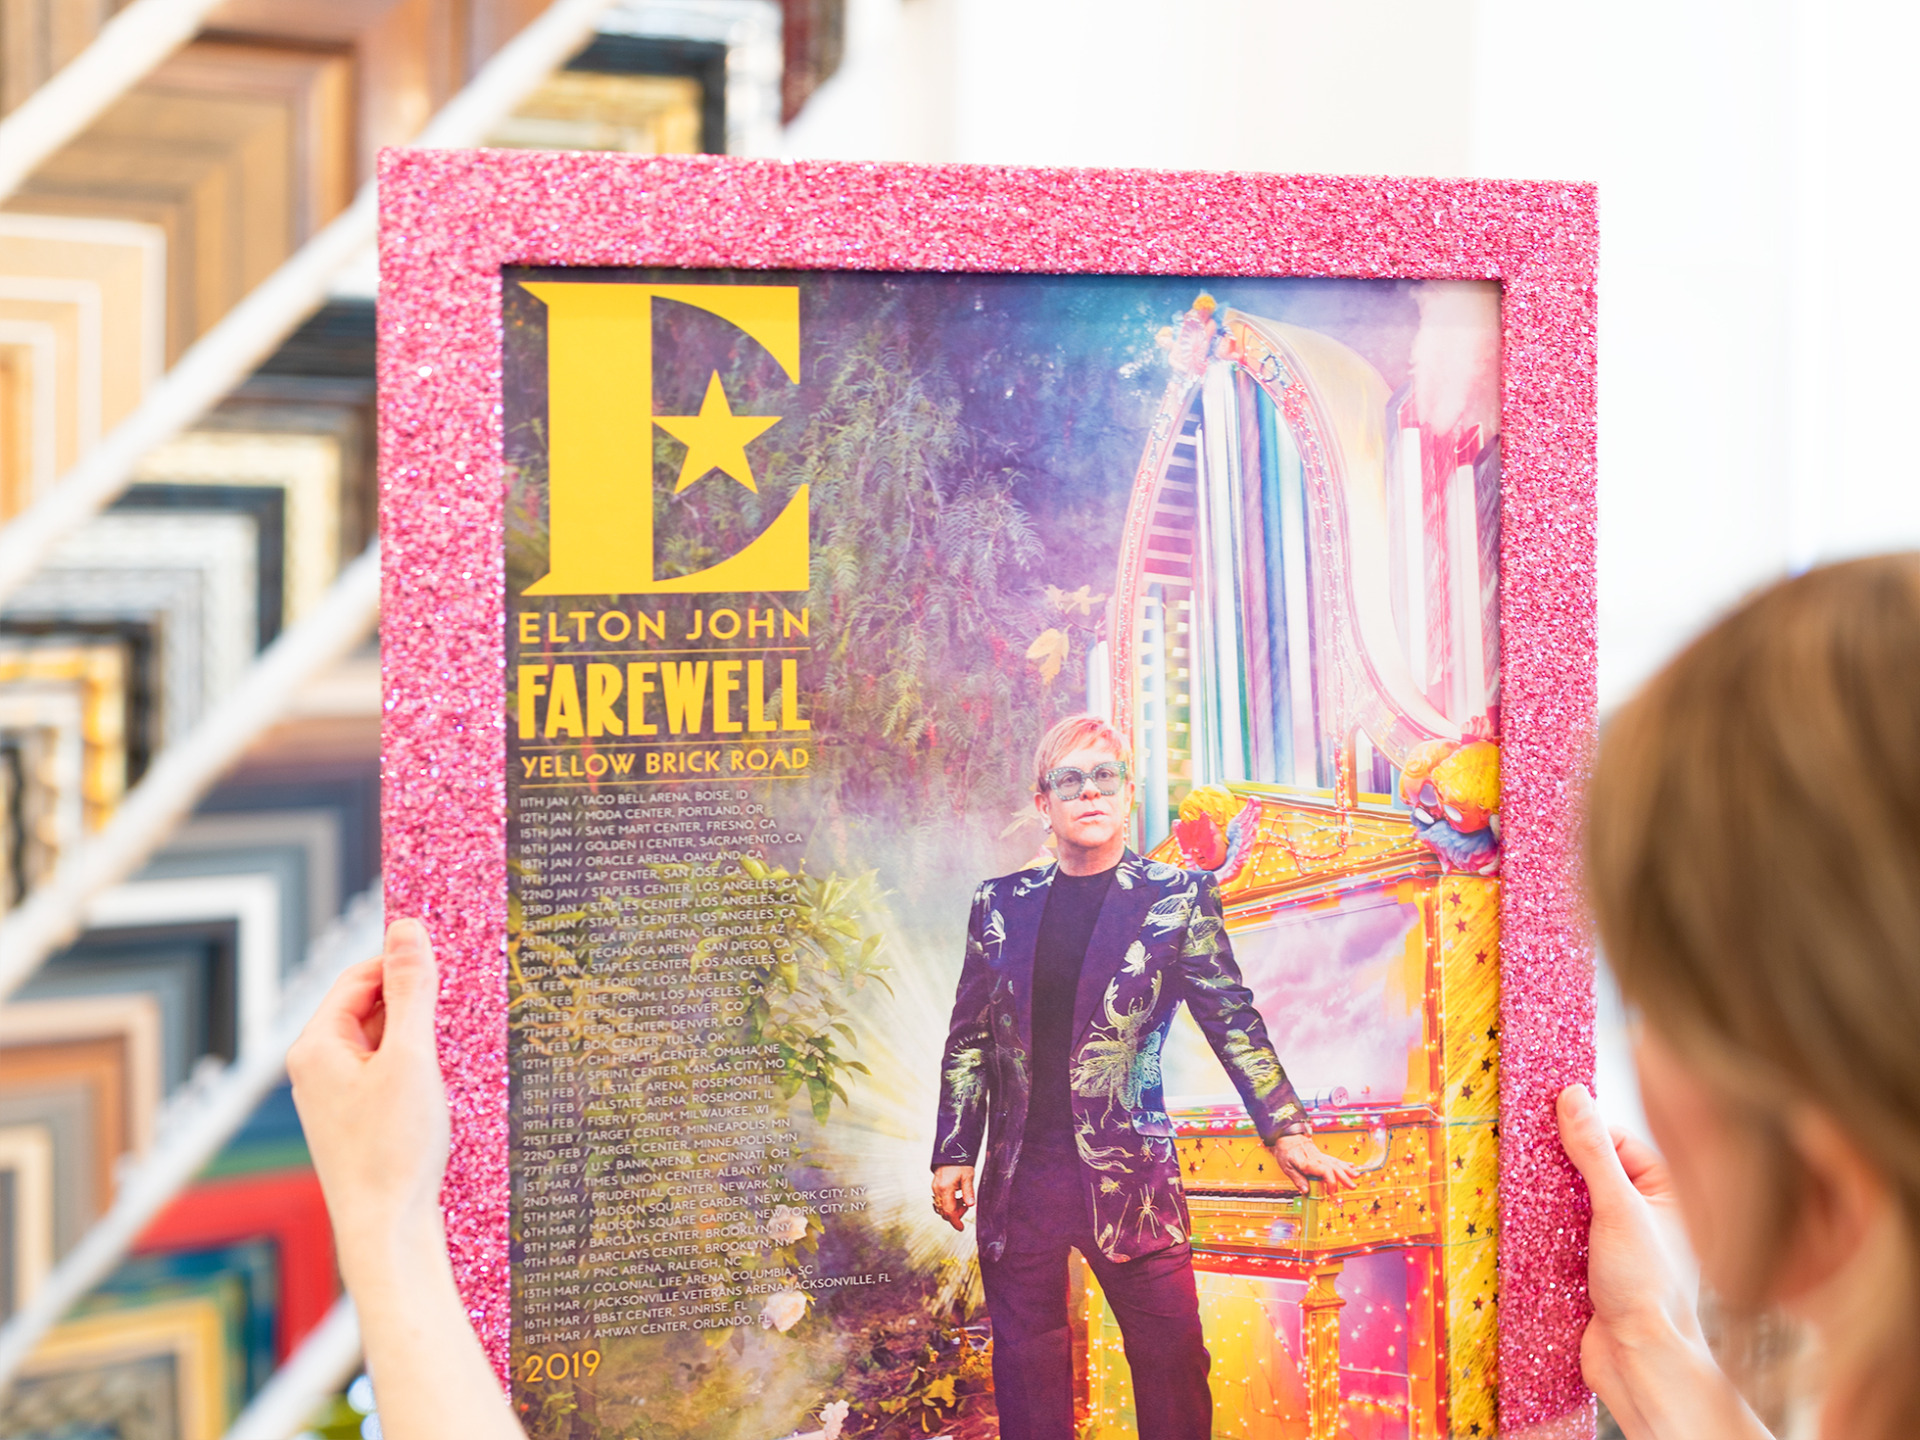 Elton John Farewell concert poster framed in a pink glitter frame.